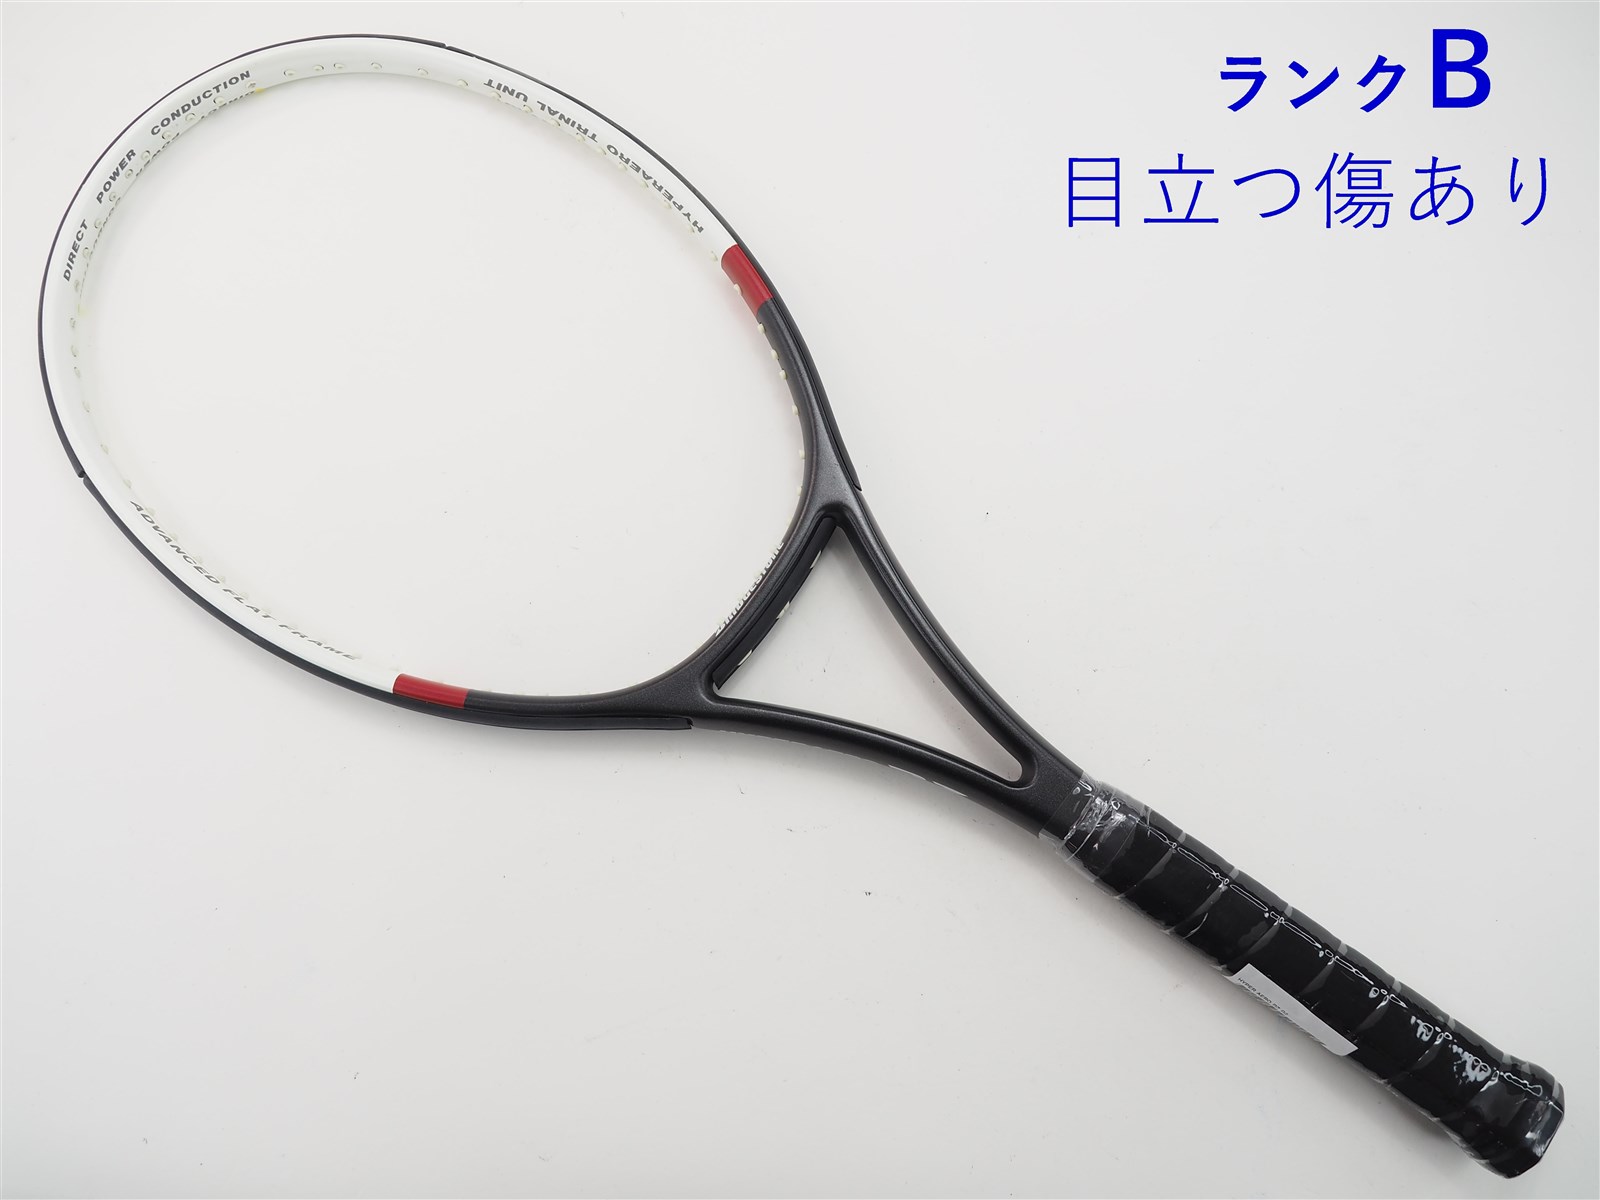 ブリヂストンスポーツ テニスラケット ブリヂストン 982